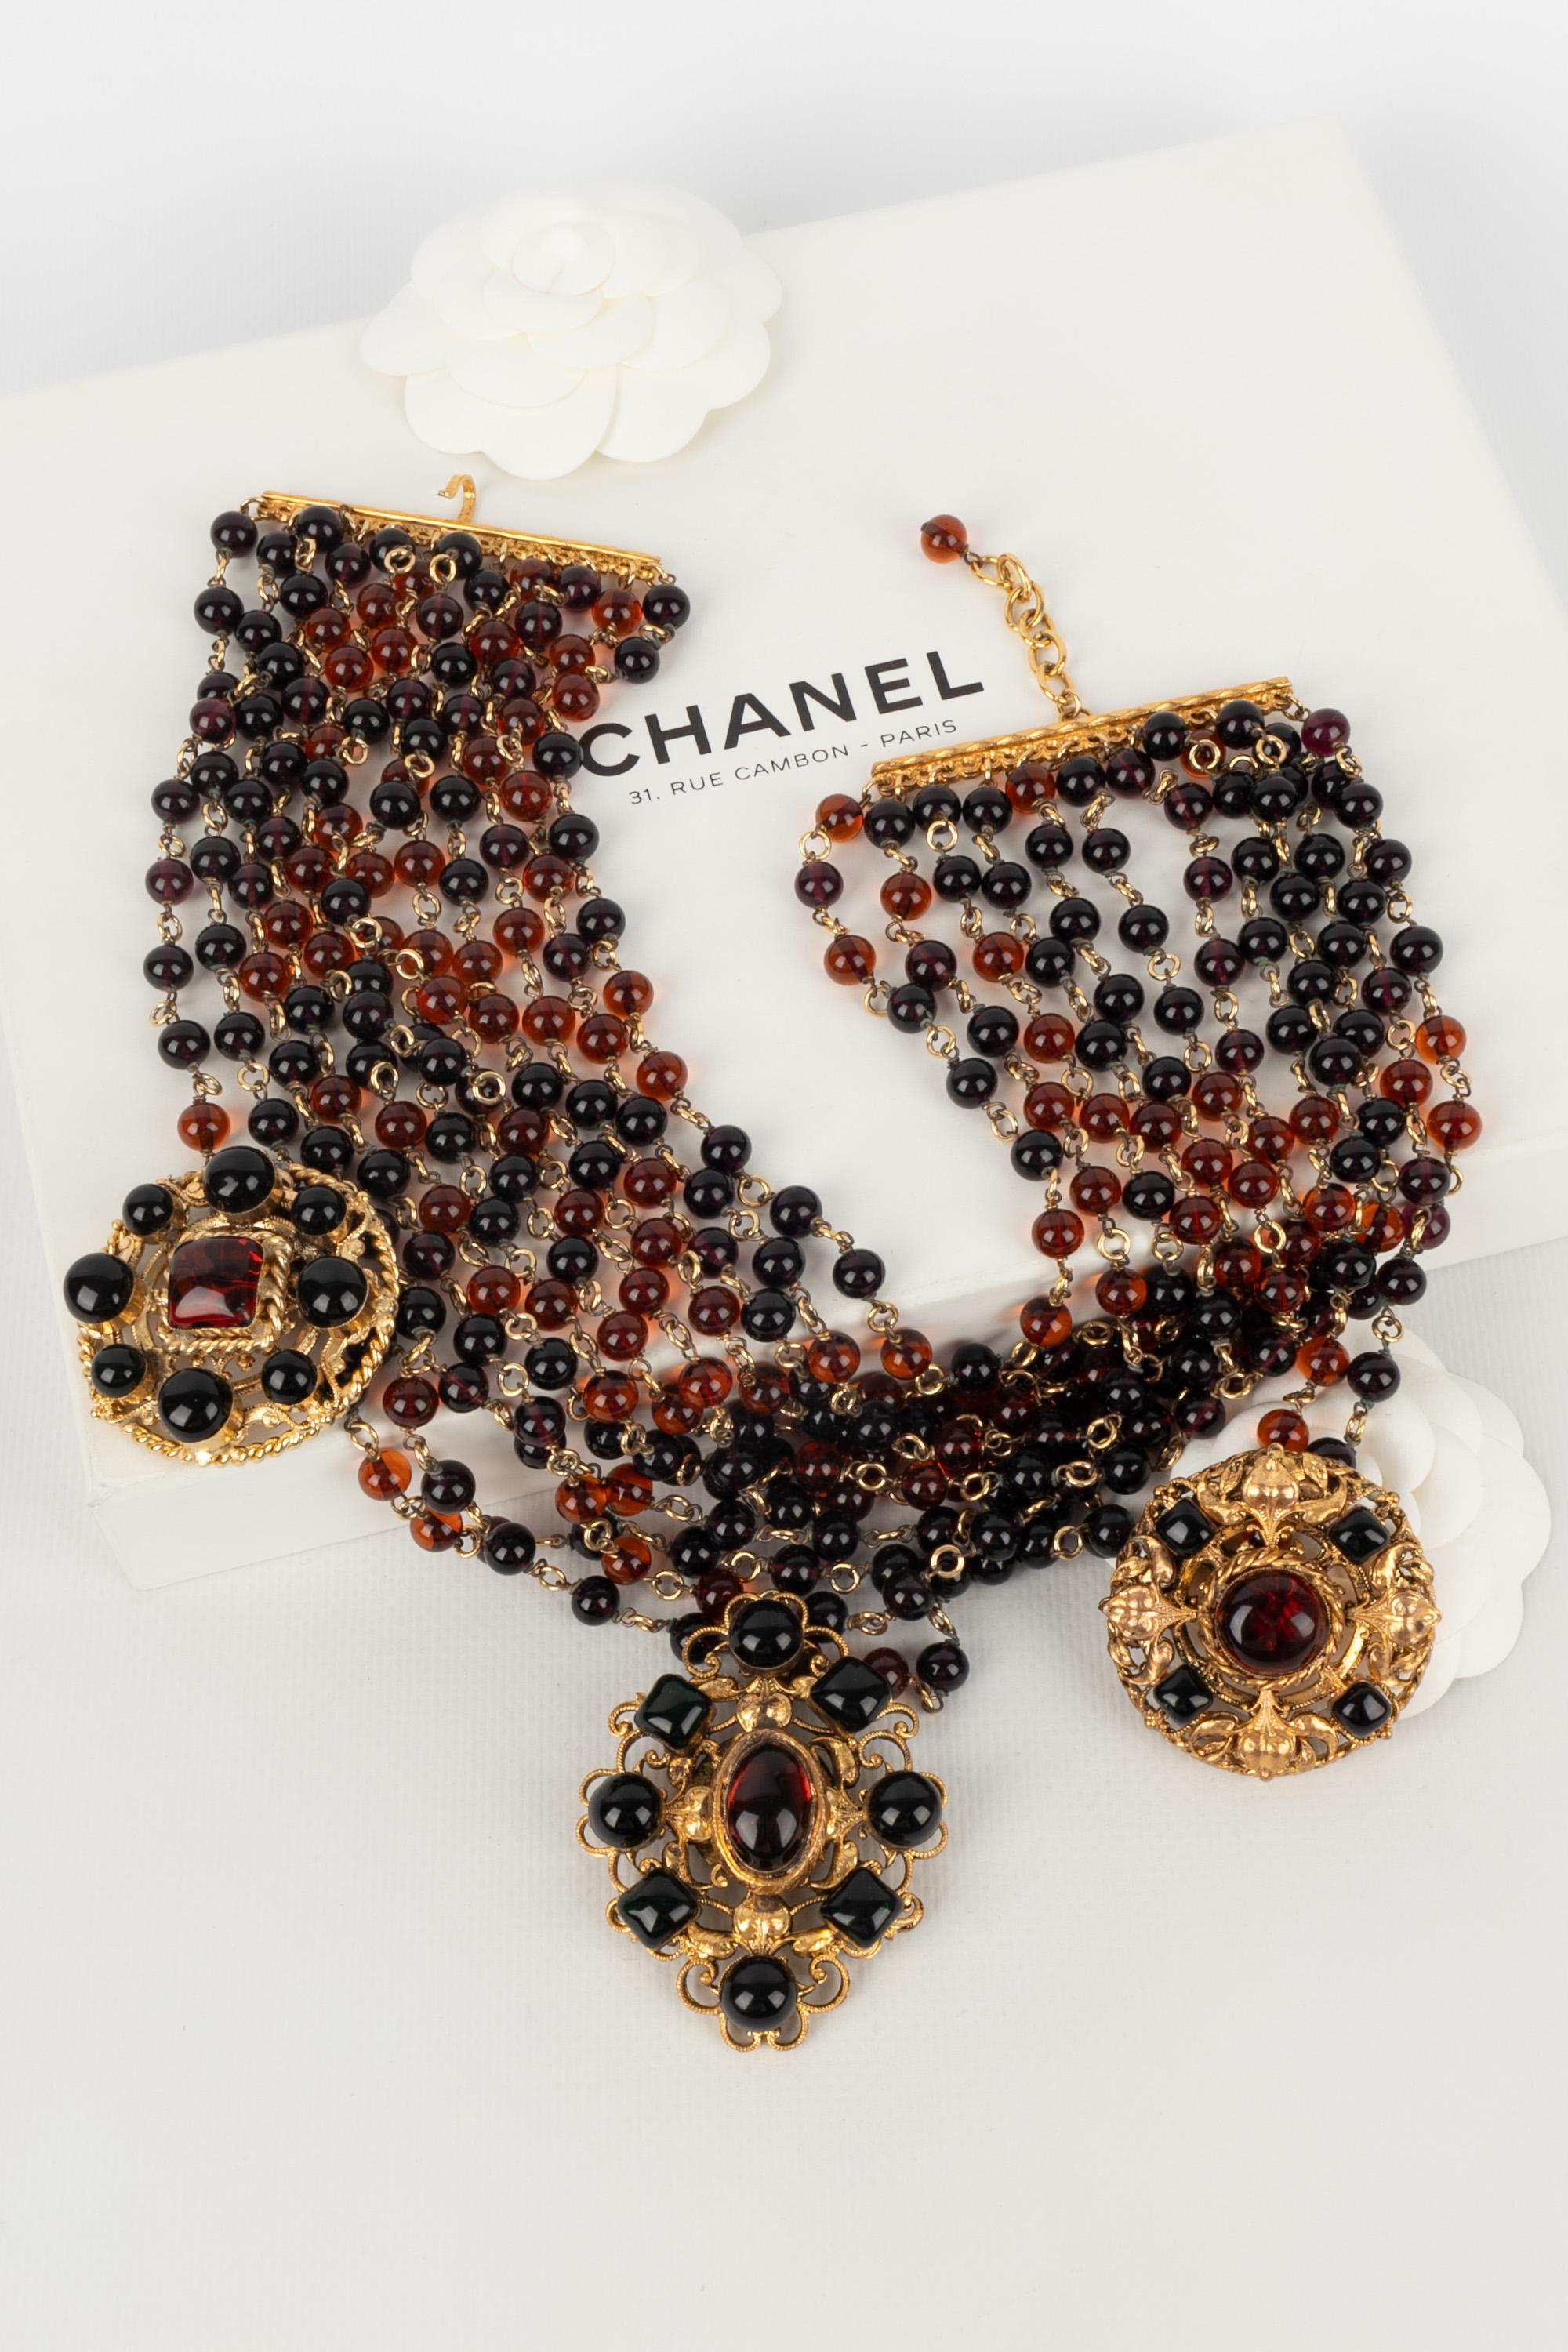 CHANEL - (Fabriqué en France) Impressionnant collier dickey avec de multiples rangs de perles de verre dans les tons violets et bruns. Il est accompagné de trois pendentifs en métal doré et d'un pendentif en pâte de verre.

Condit :
Très bon